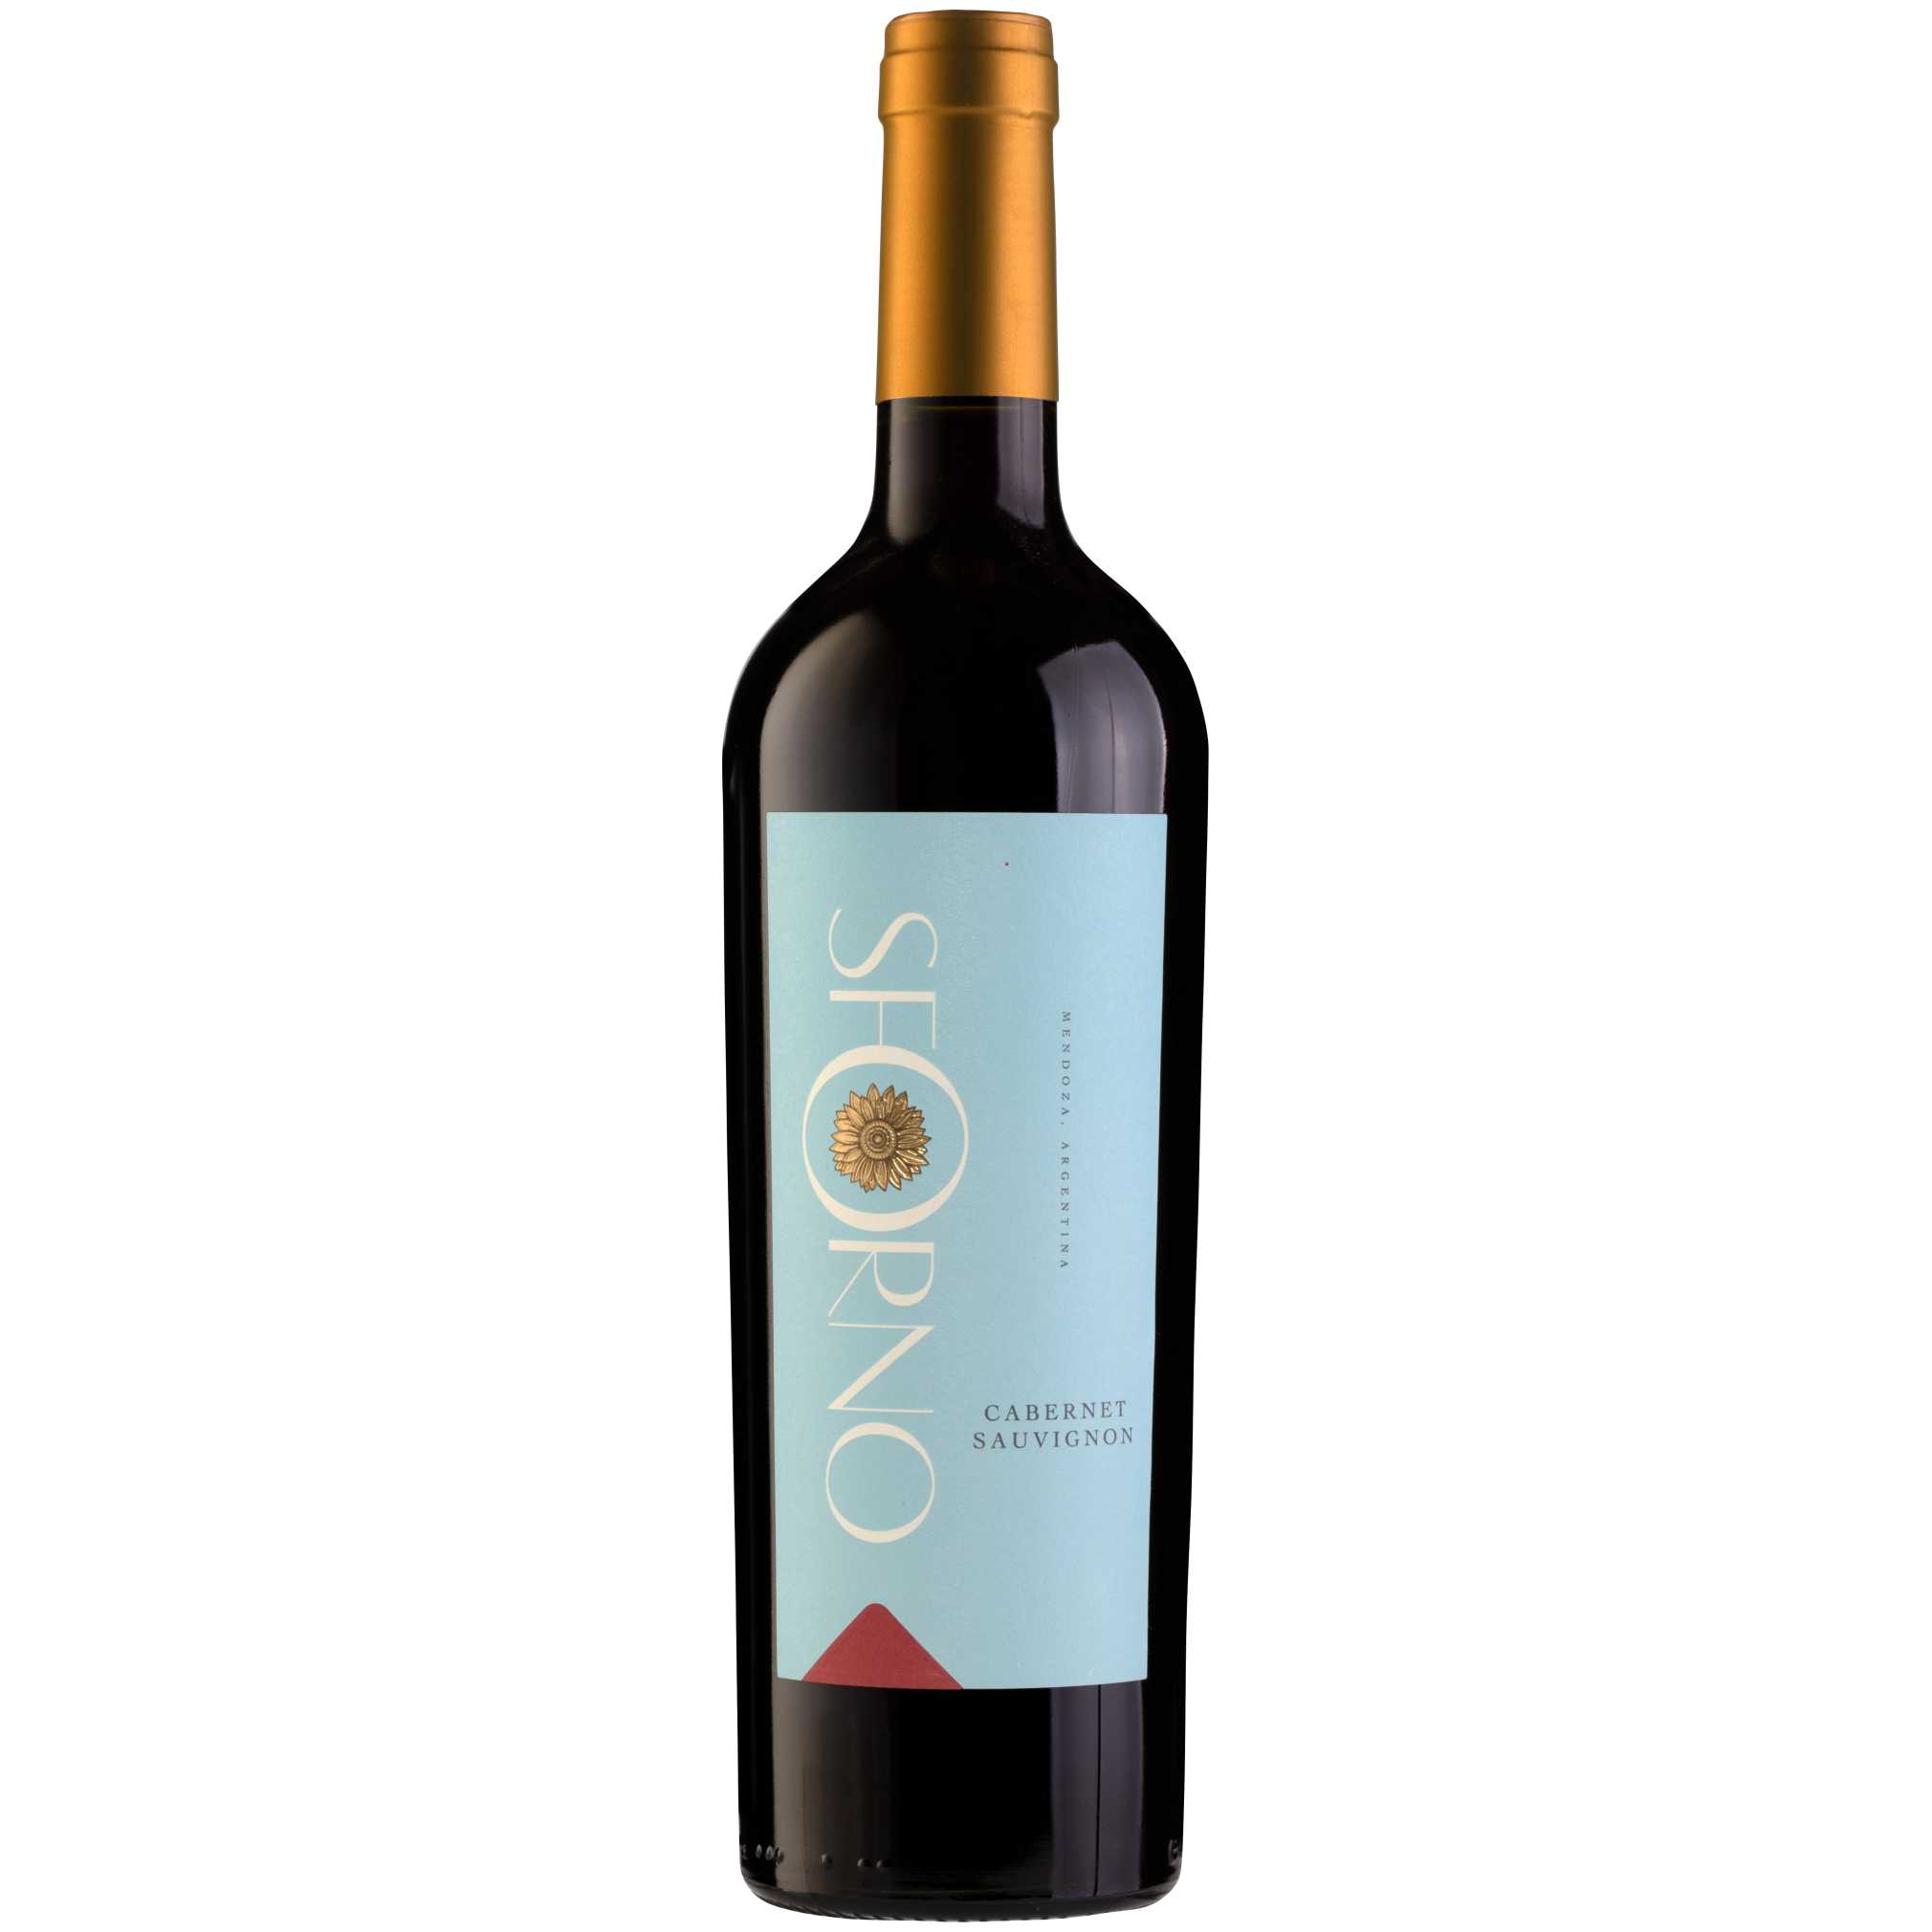 Sforno Cabernet Sauvignon - A Kosher Wine From Argentina